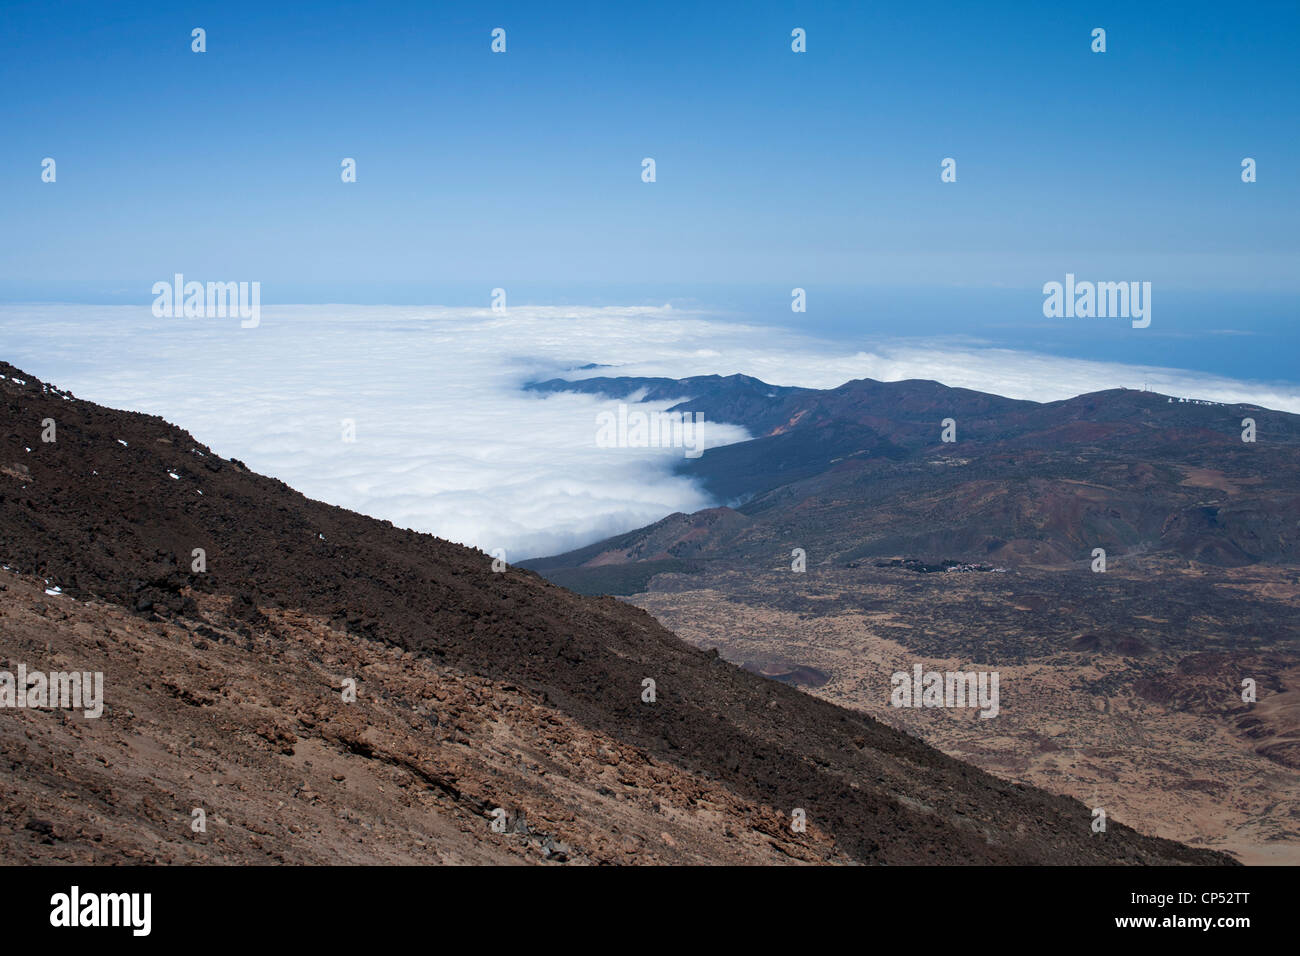 Vista desde la cumbre del Monte Teide en Tenerife, Islas Canarias, España mostrando el terreno y las nubes por debajo. Foto de stock